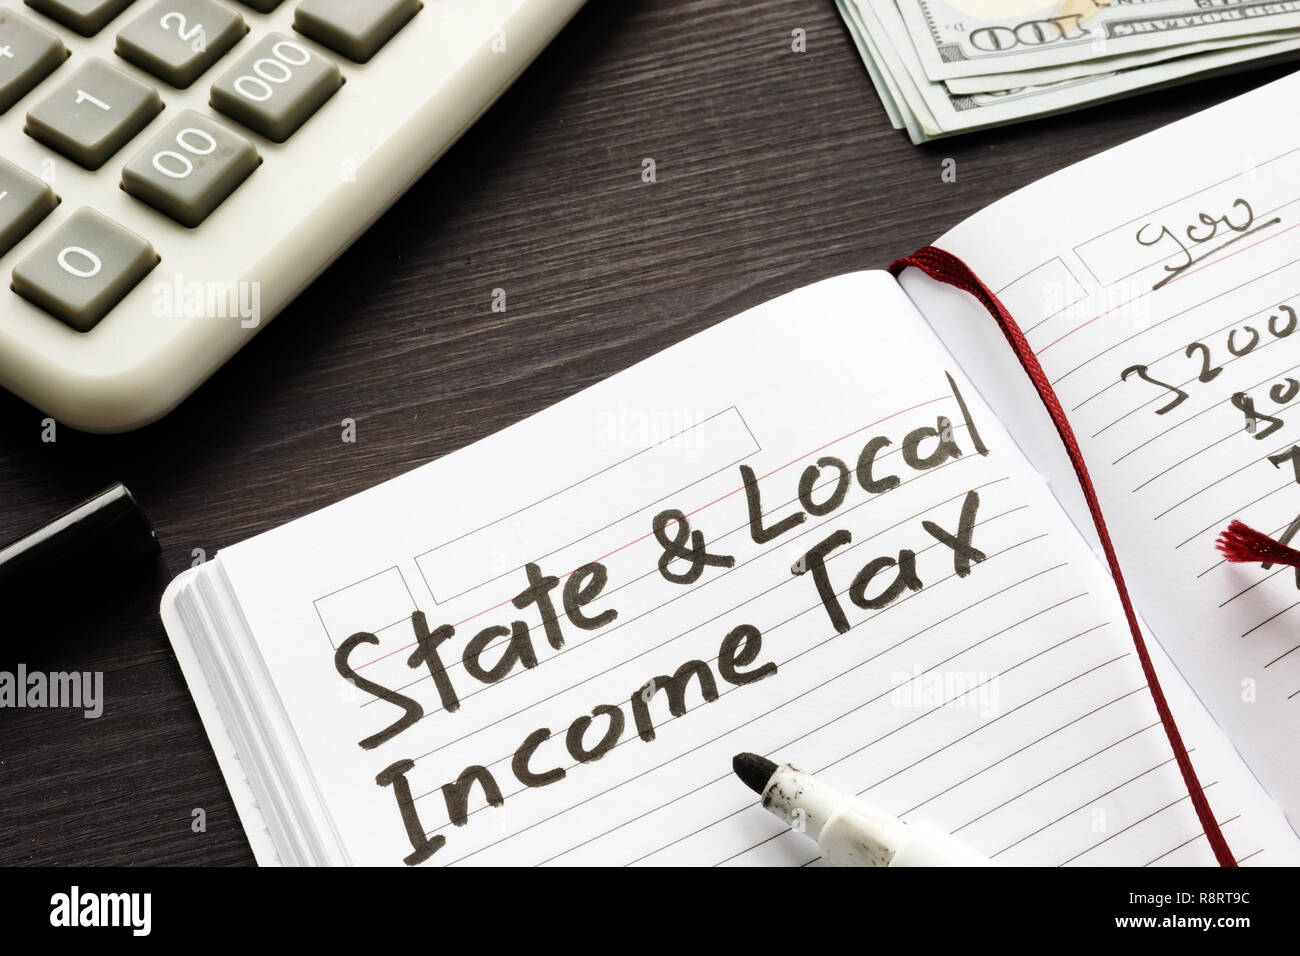 Staatliche und lokale Steuern in einer Anmerkung geschrieben. Stockfoto